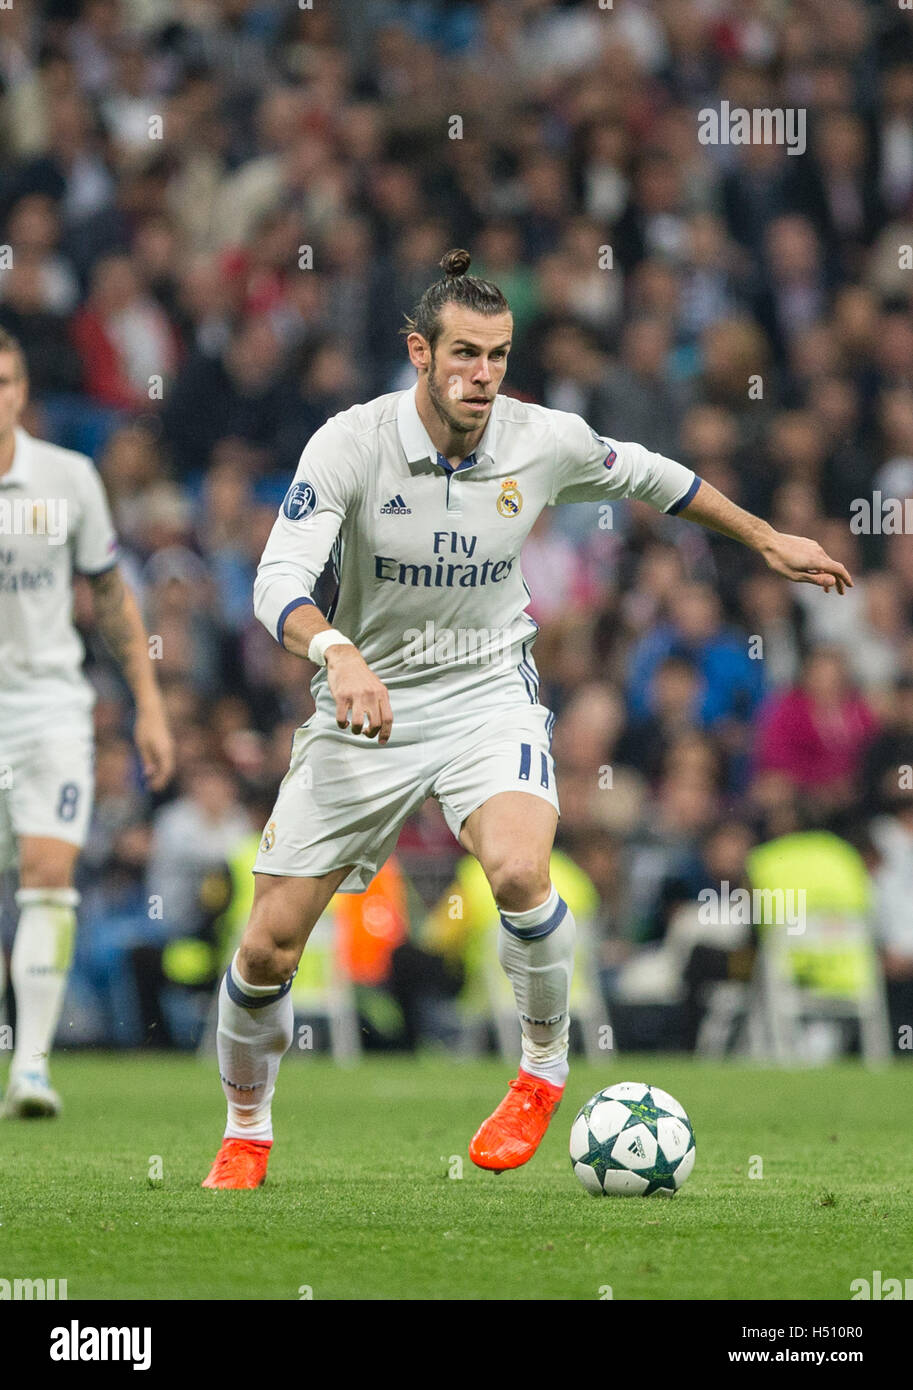 Madrid, Spanien. 18. Oktober 2016. Real Madrid Welsh weiterleiten Gareth Bale in der UEFA Champions League-Spiel zwischen Real Madrid und Legia Warszawa im Stadion Santiago Bernabeu in Madrid, Dienstag, 18. Oktober 2016. Bildnachweis: VWPics/Alamy Live-Nachrichten Stockfoto